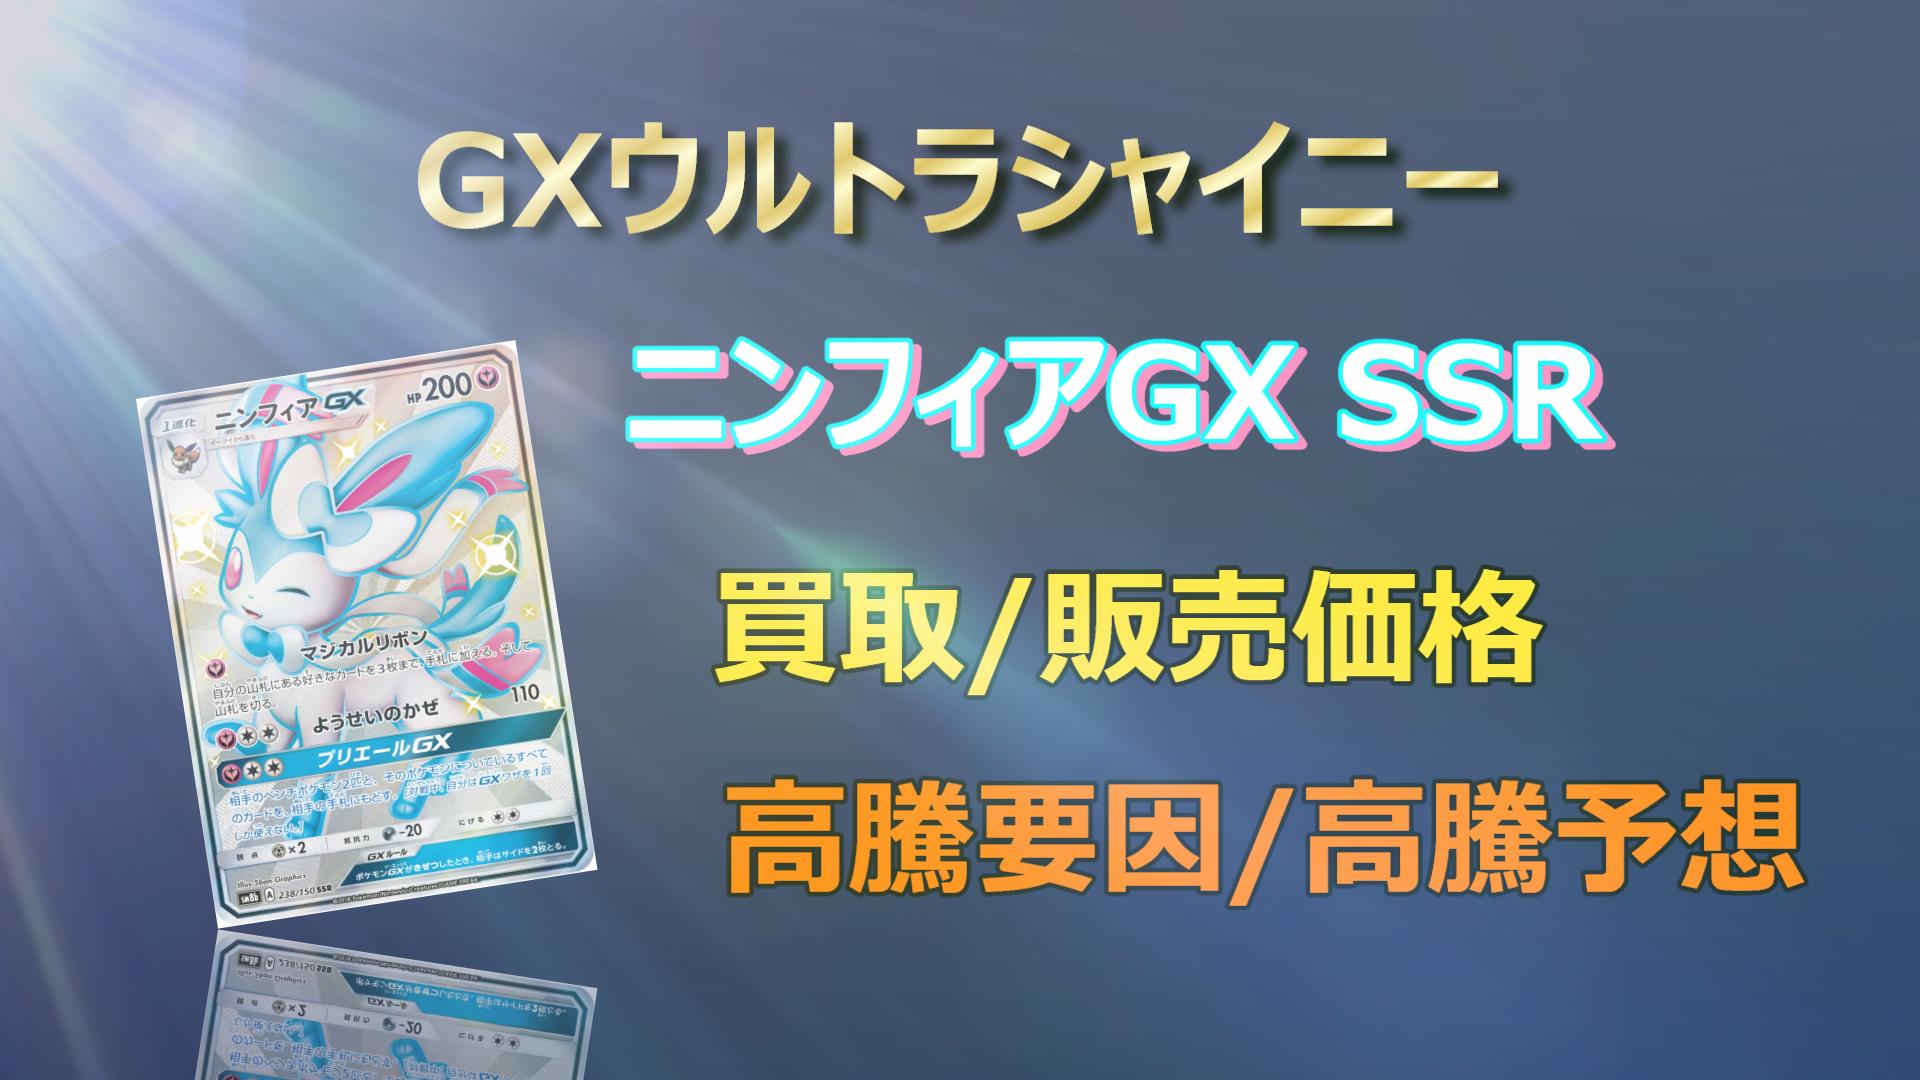 ニンフィアGX SSR PSA10 GXウルトラシャイニー